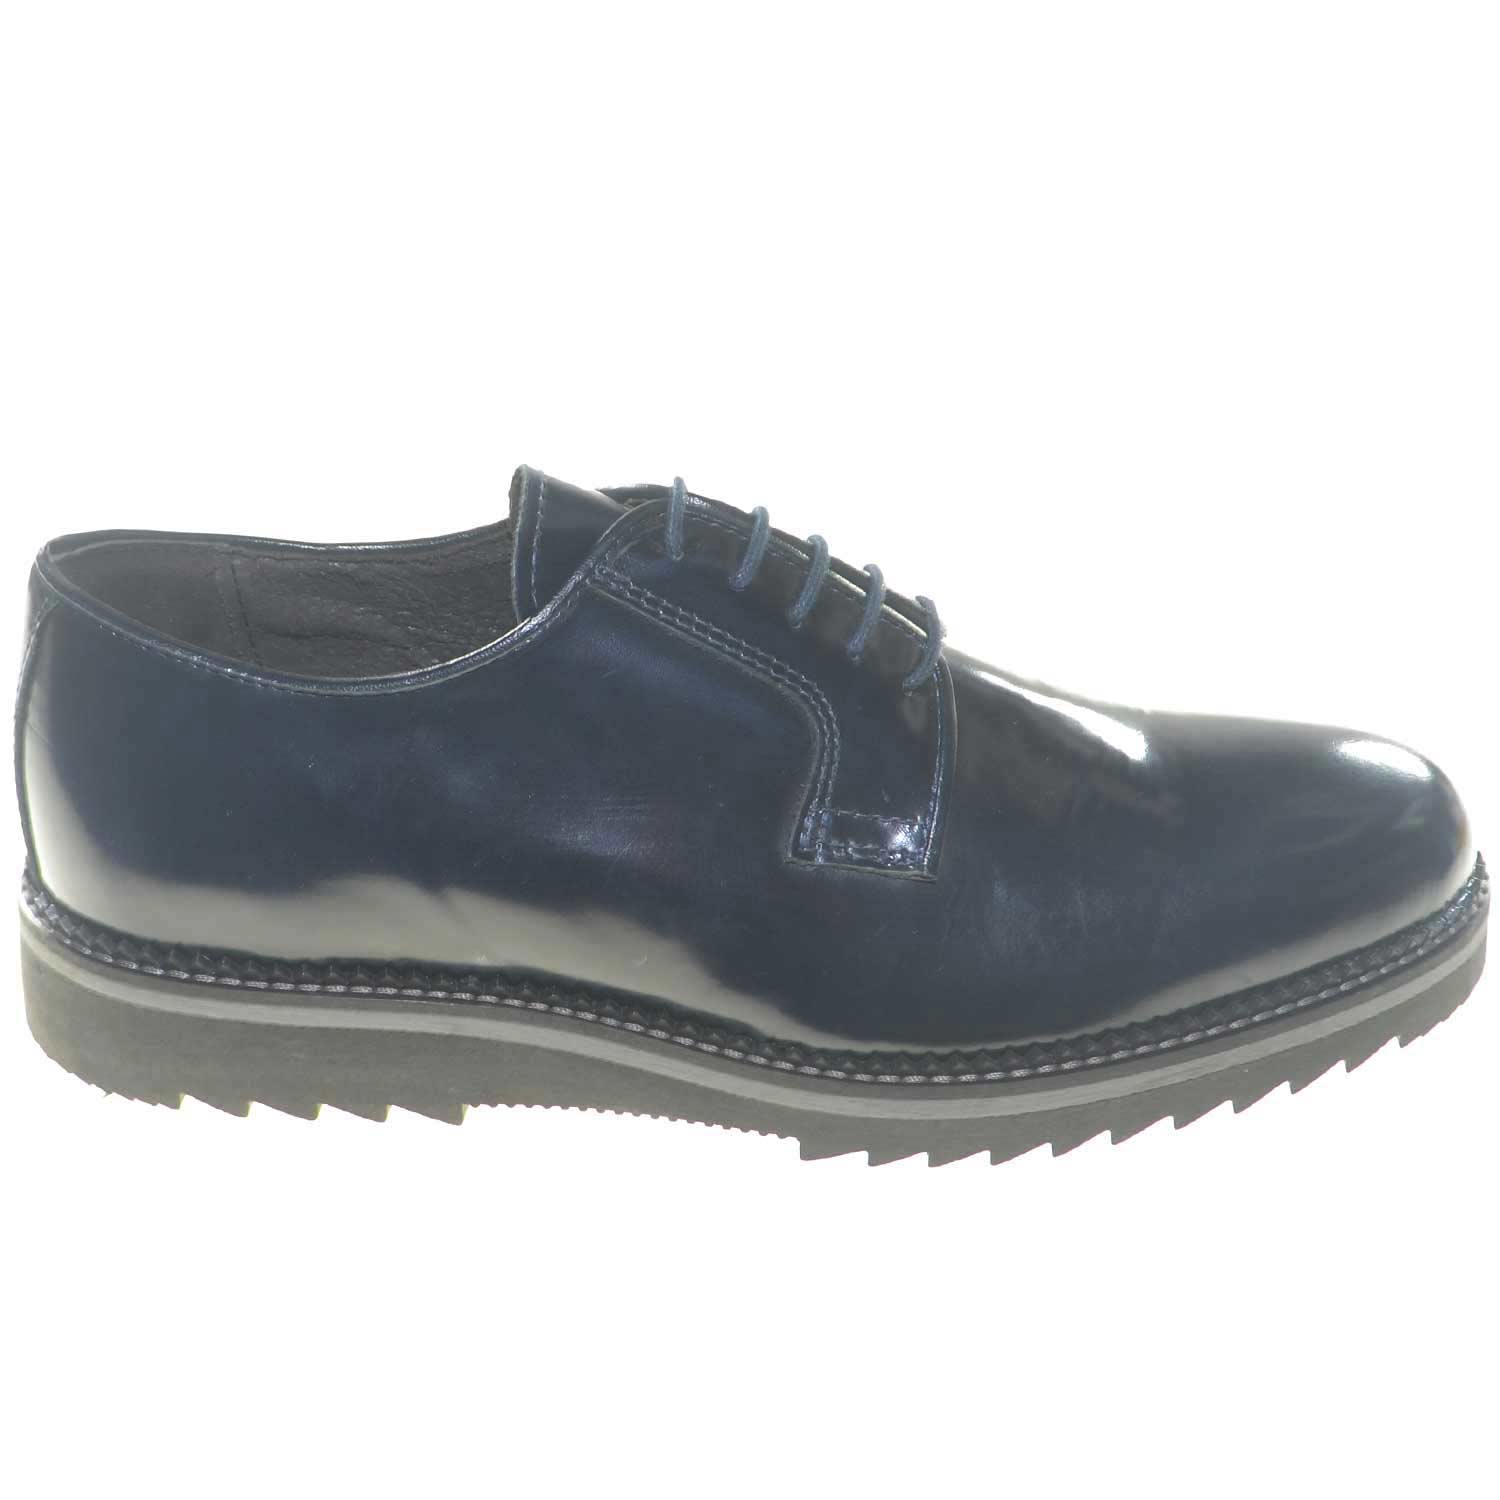 scarpe uomo stringate vera pelle abrasivato blu made in italy fondo antiscivolo moda classico sportivo.